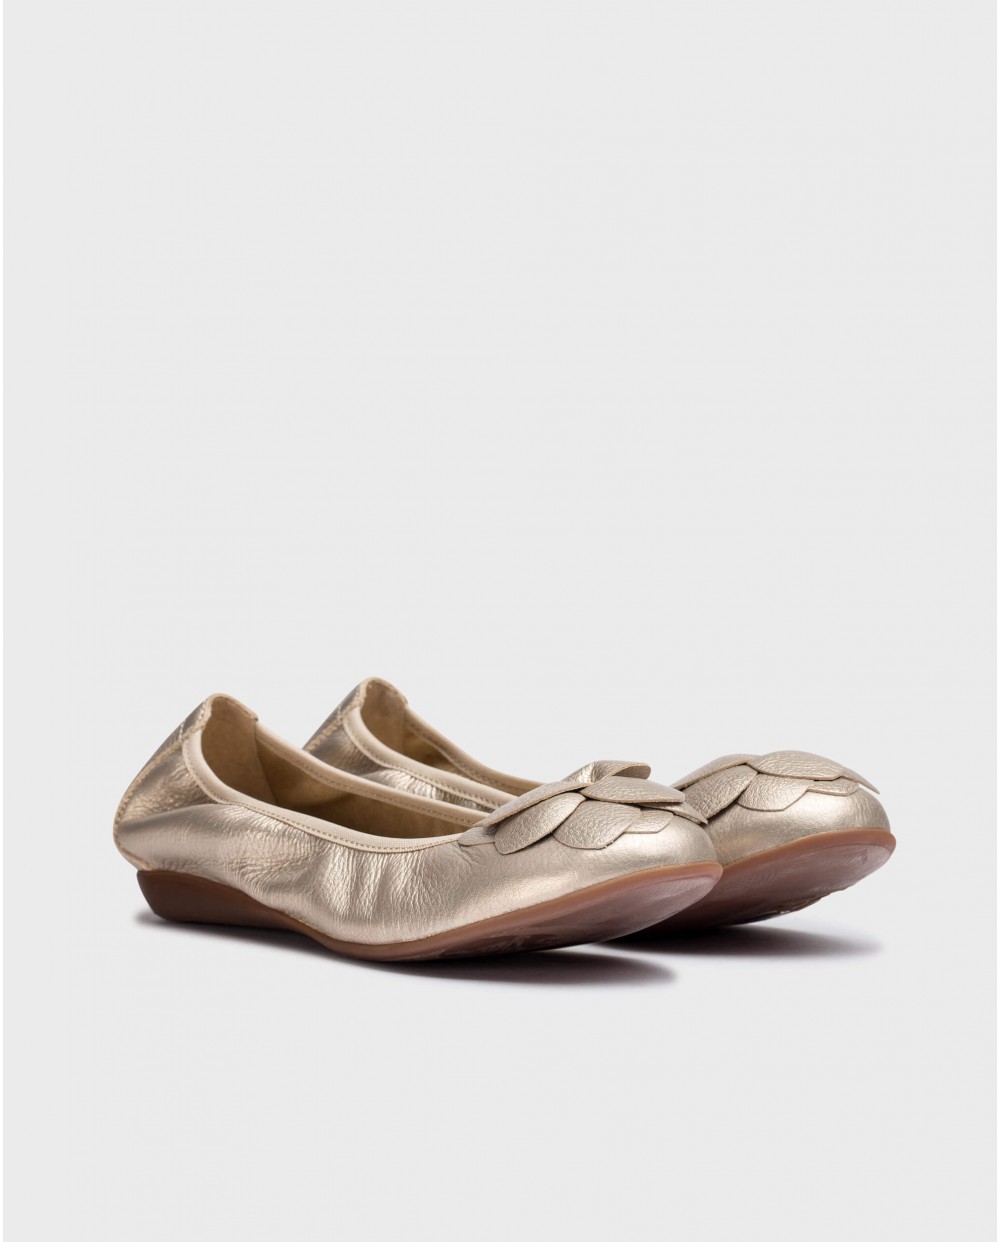 Wonders-Women shoes-Metalic PRAGA Ballet flat